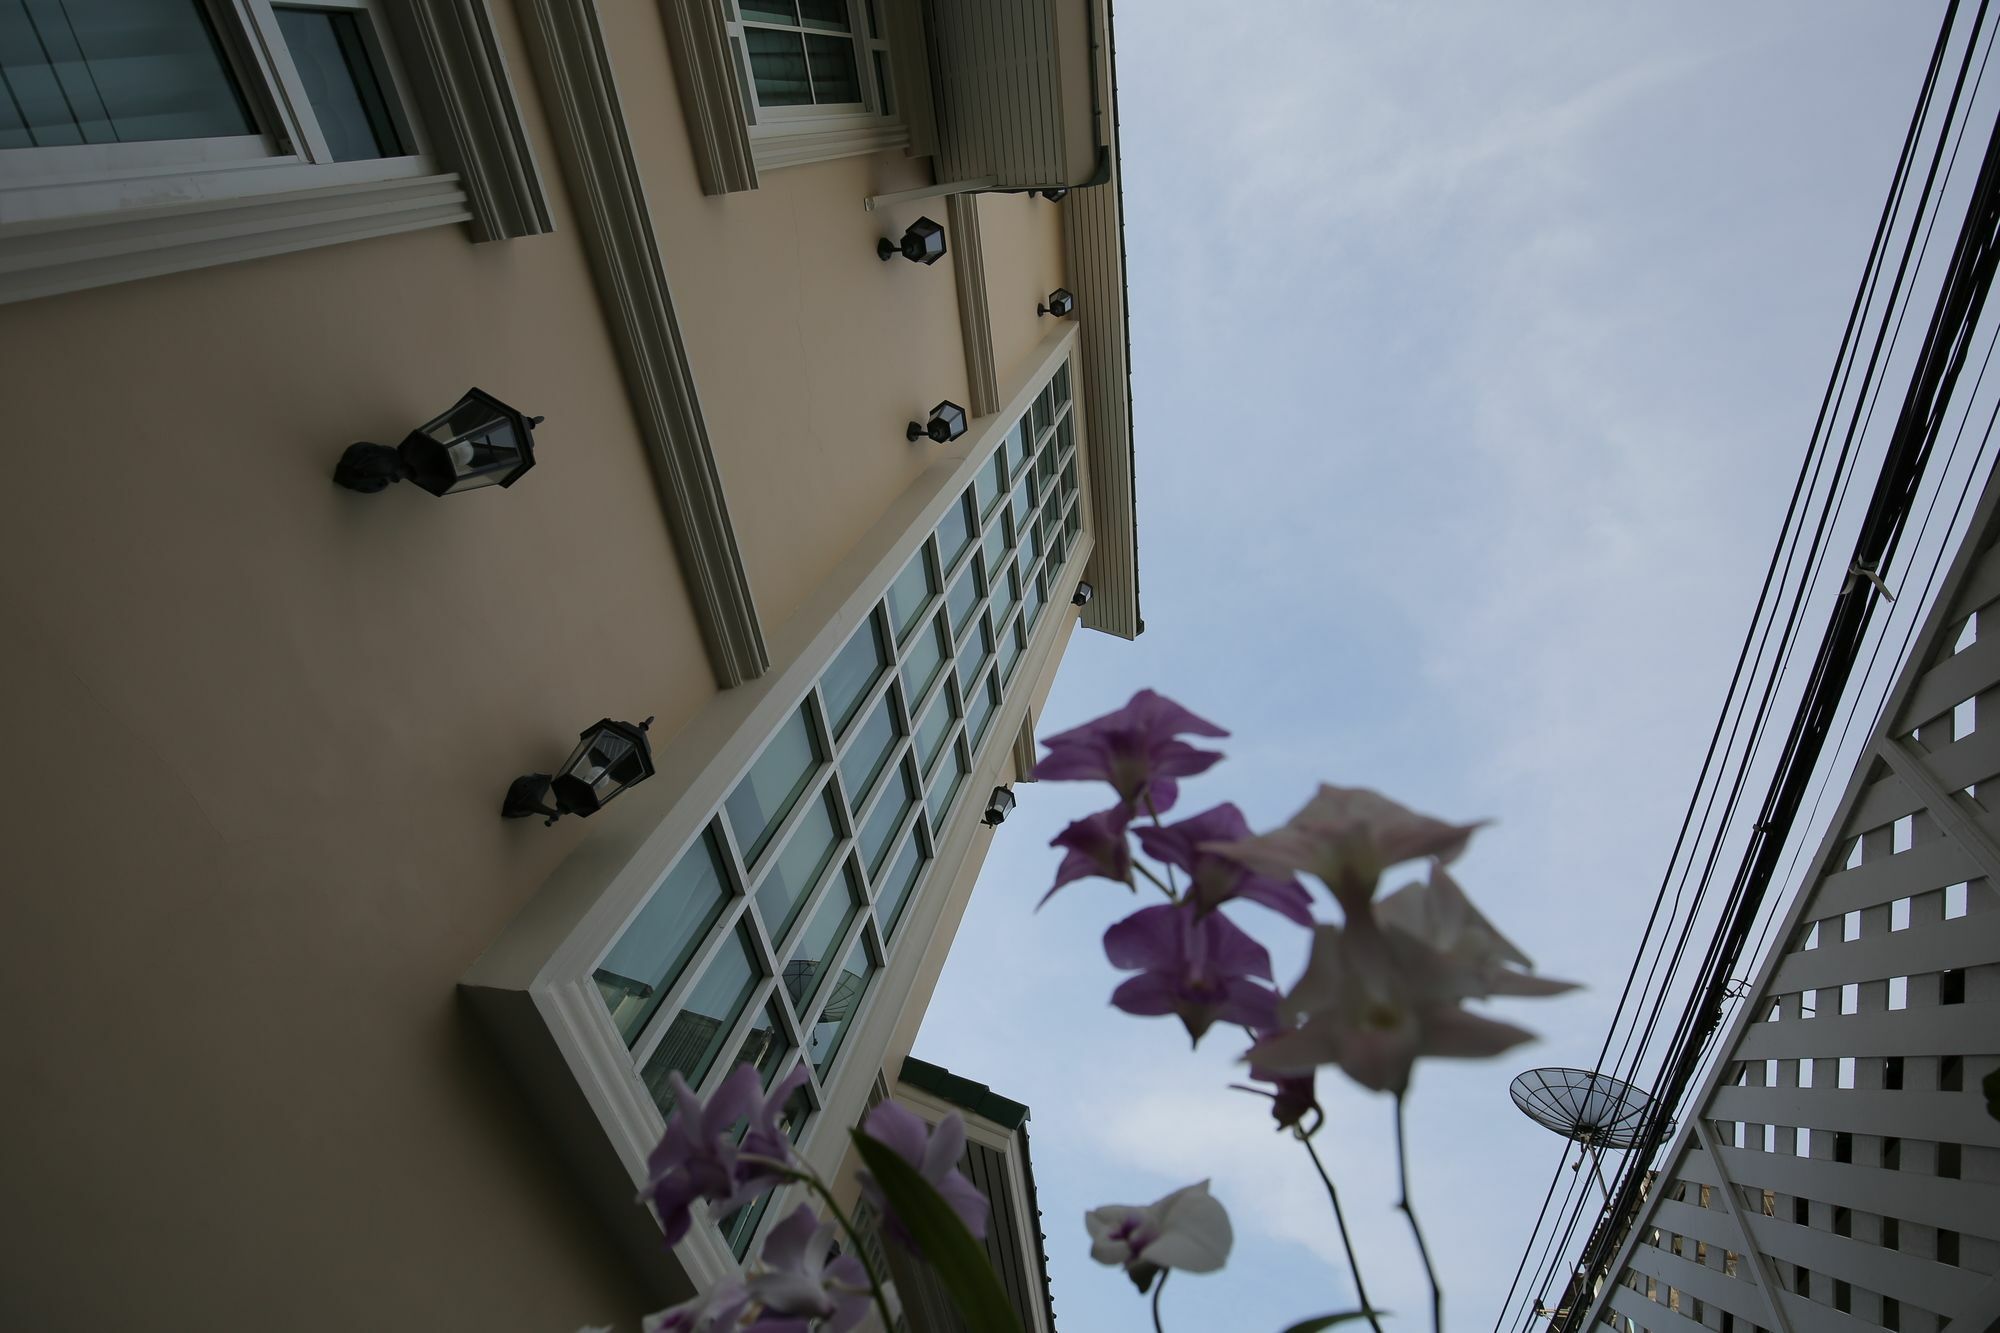 The Orchid House 153 Hotel Bangkok Ngoại thất bức ảnh